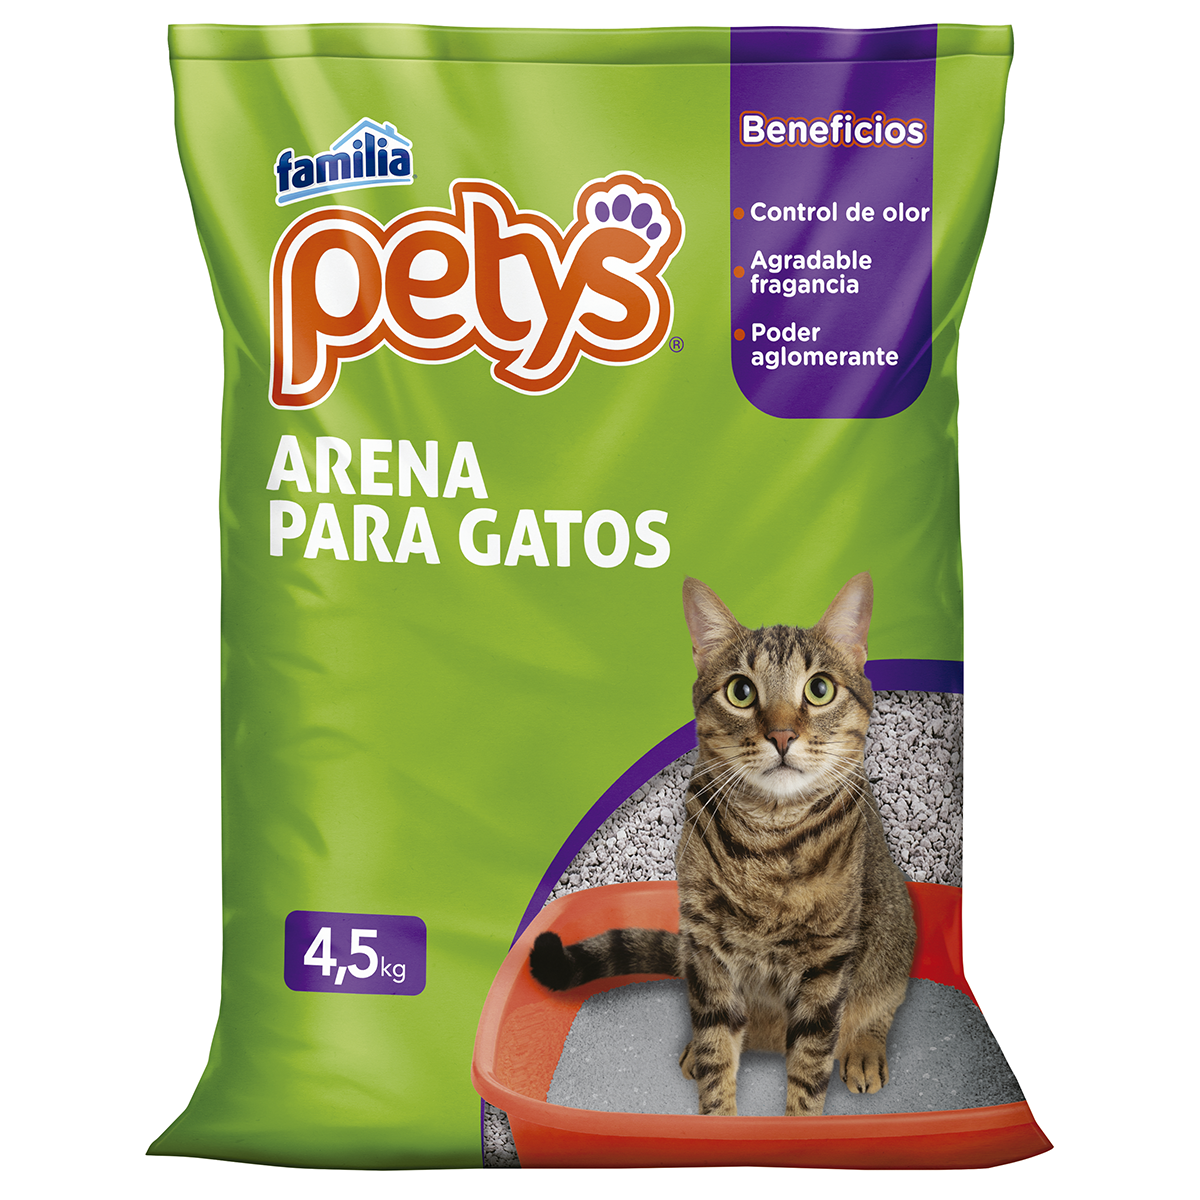 Imagen Arena Para Gatos Petys x 4,5 Kg 1